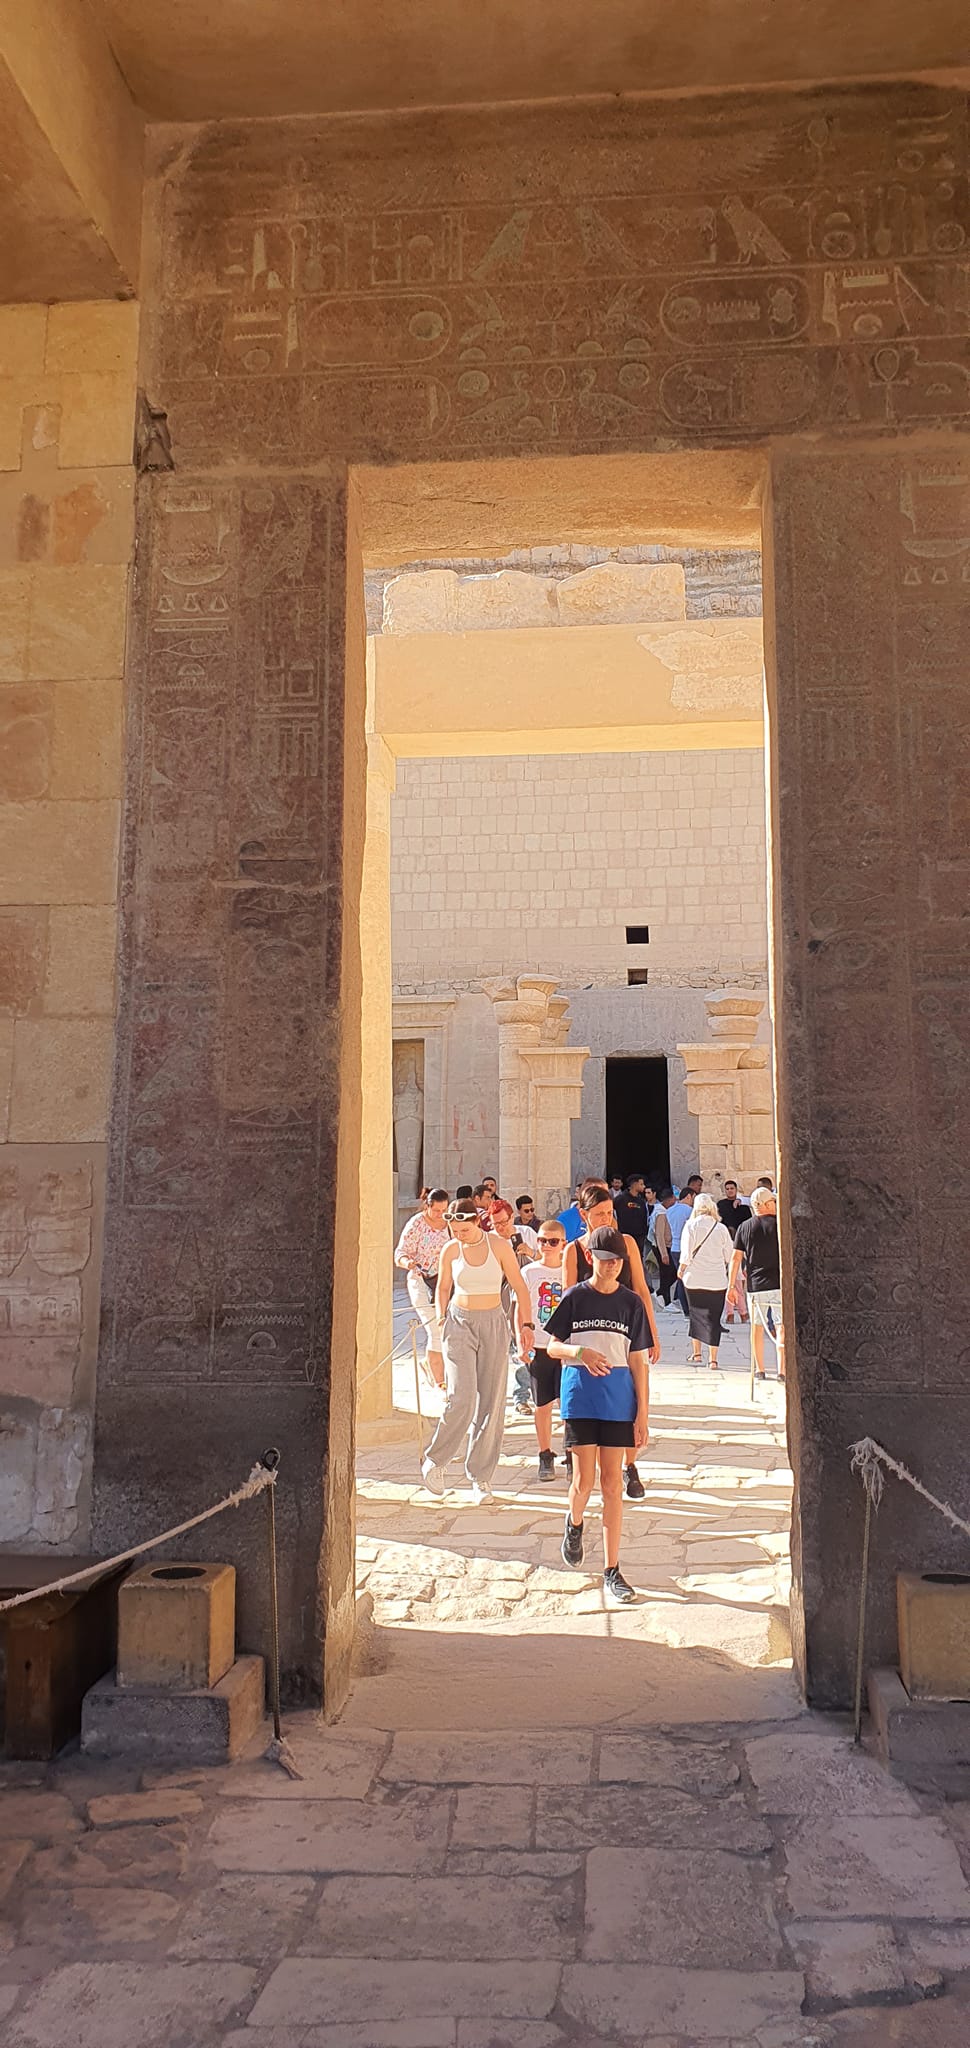 جانب من الاقبال السياحى فى معبد حتشبسوت